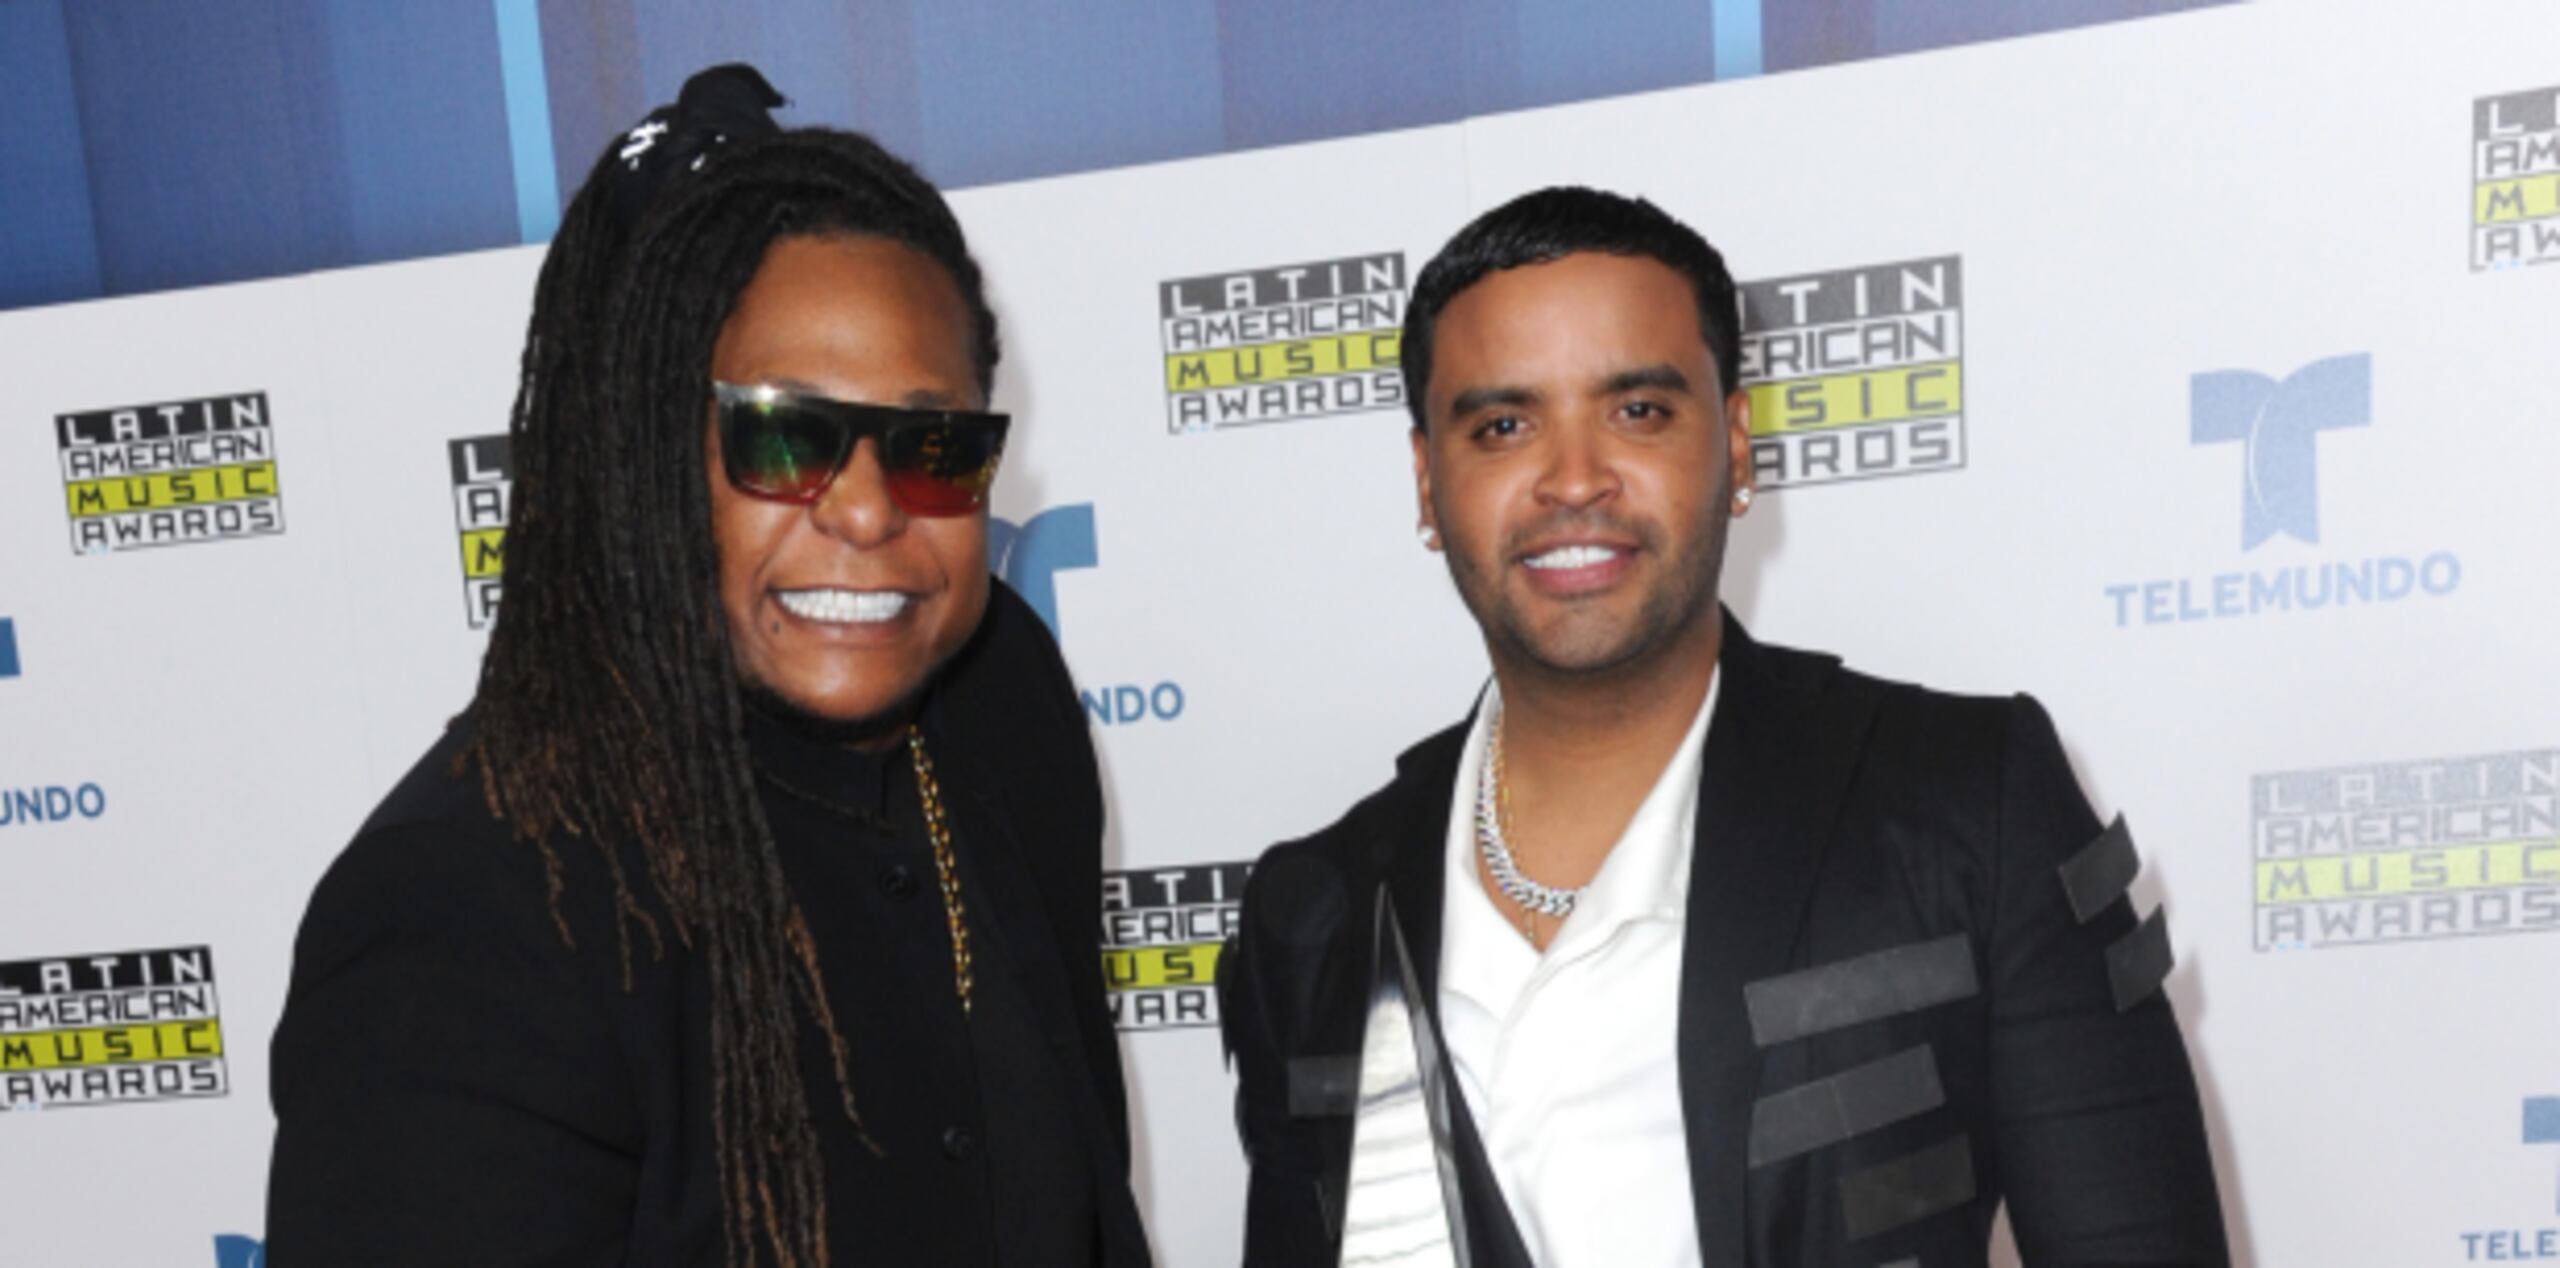 Zion y Lennox se alzaron como “Dúo urbano del año” en los premios Billboard y los Latin American Music Awards. (Prensa Asociada)